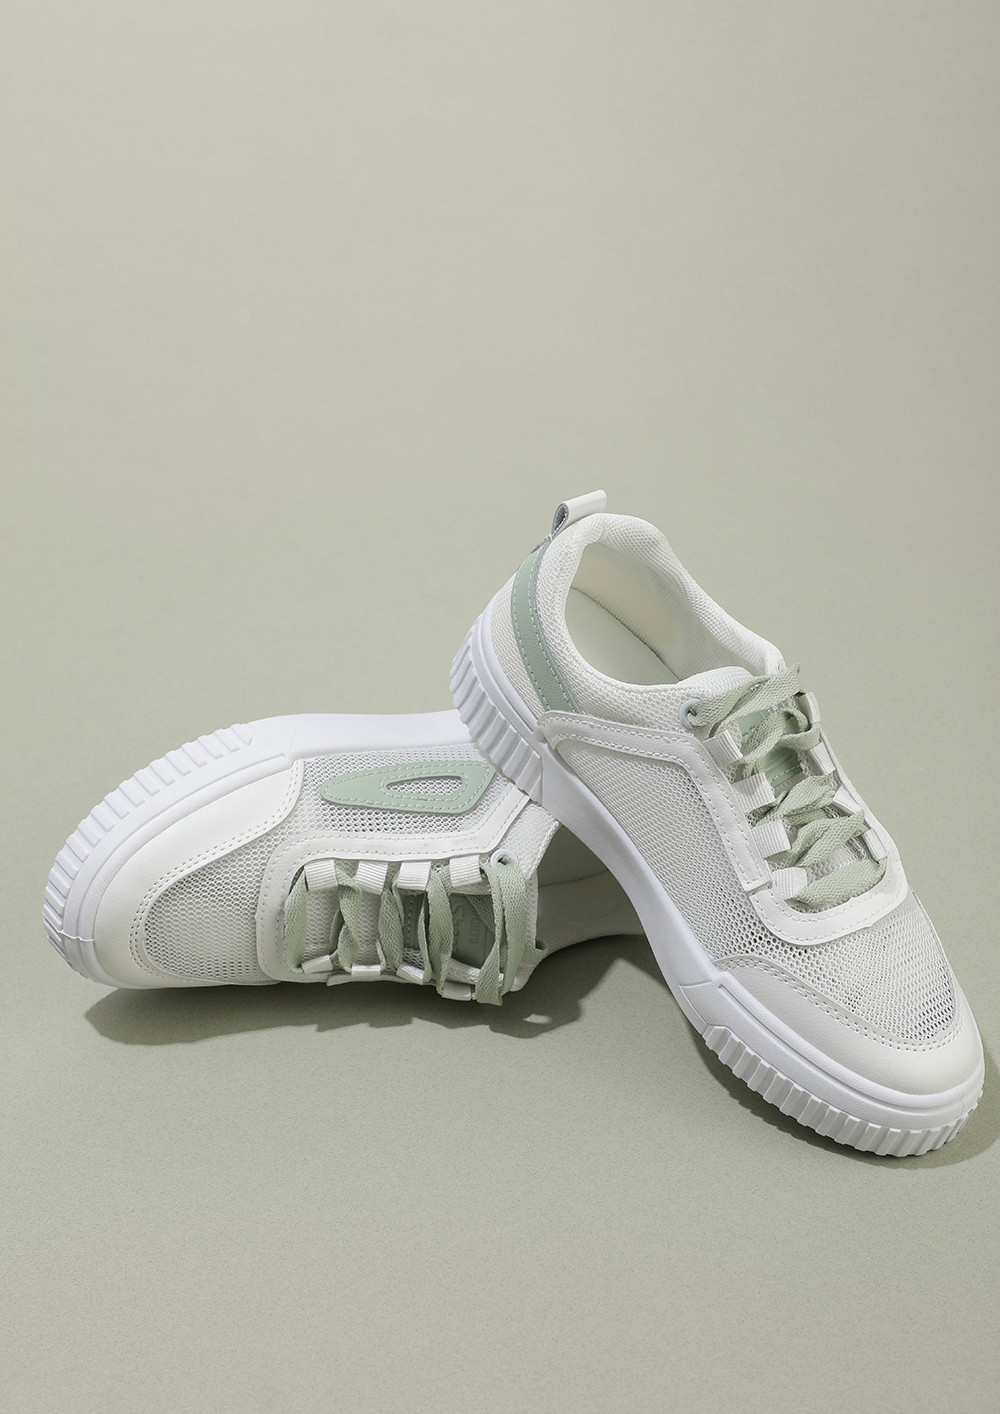 Reebok Sport Ahead Action Walking Sneakers Athletic Shoes Gray Women's Sz 9  | eBay